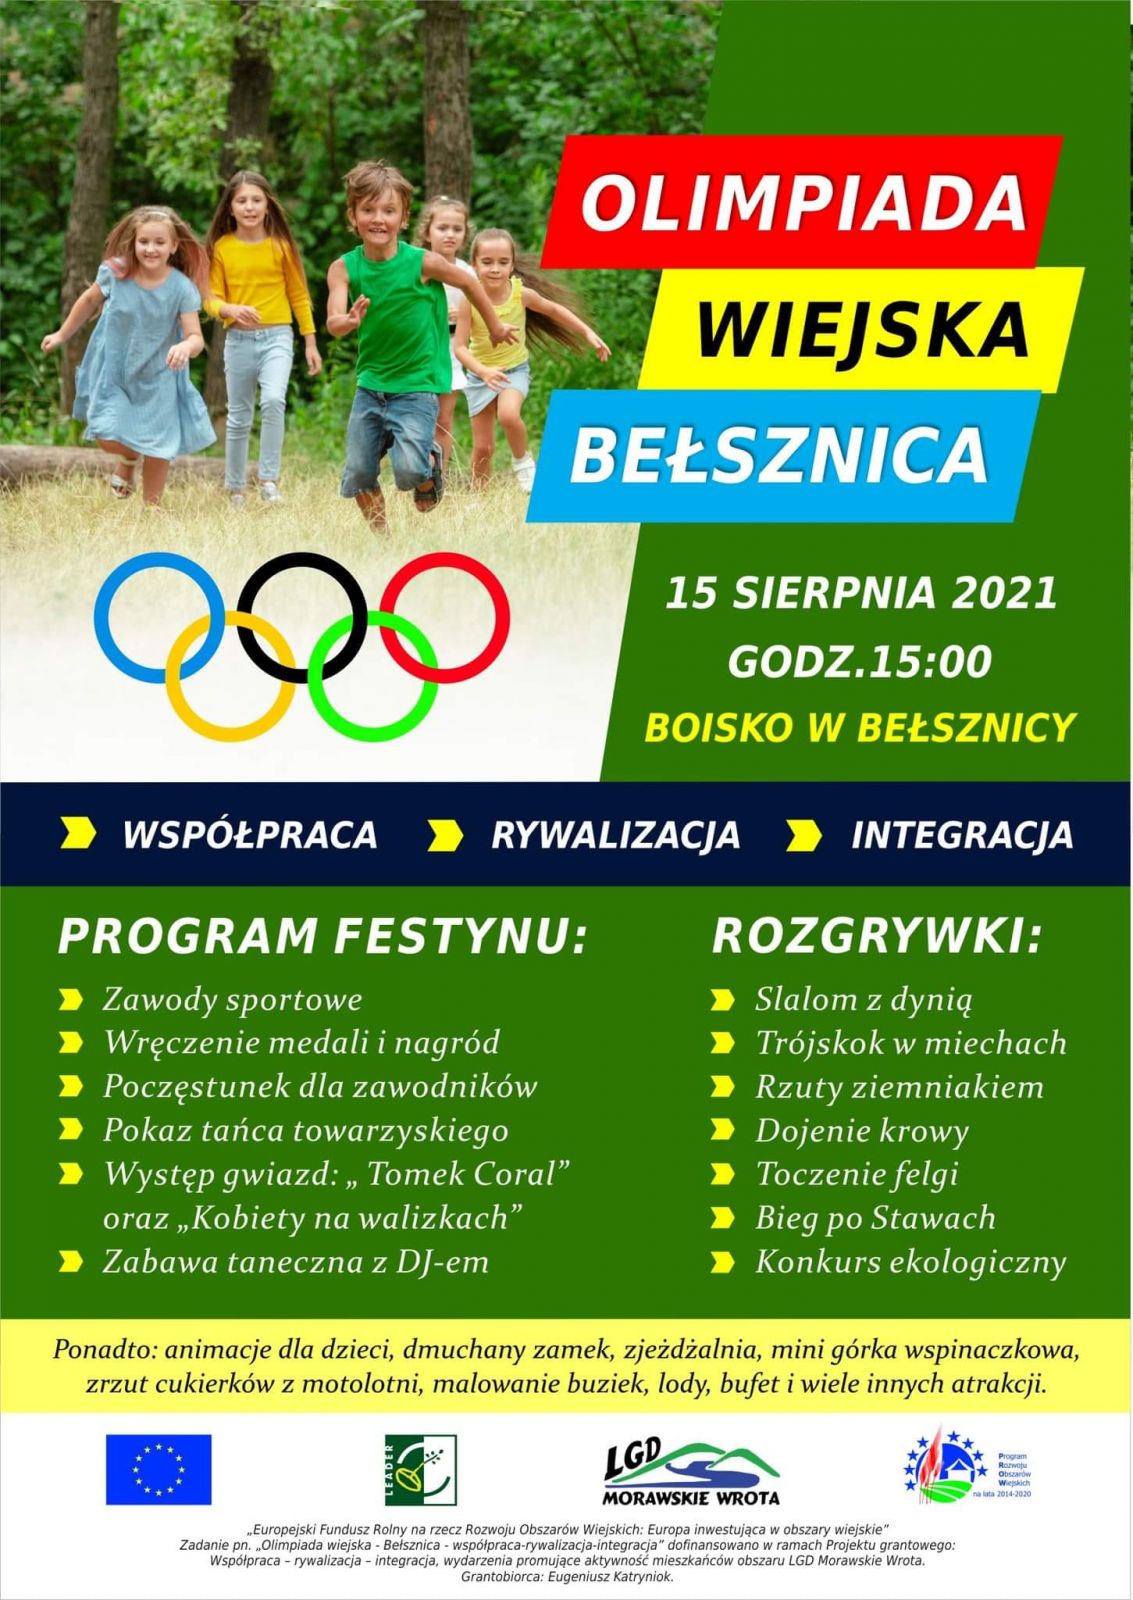 Plakat promujący festyn w Bełsznicy